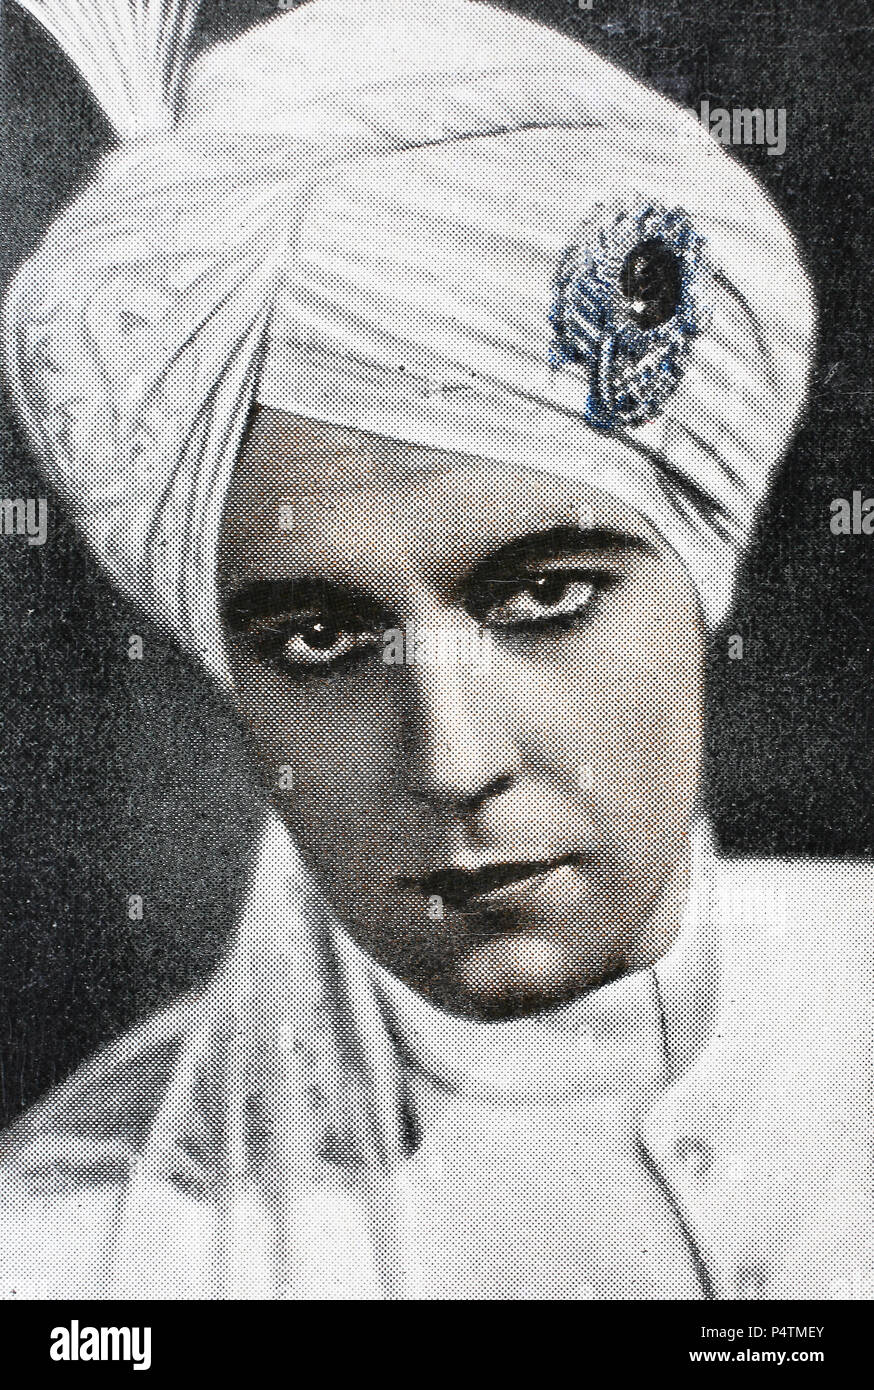 José Ramón Gil Samaniego, mejor conocido como Ramón Novarro (6 de febrero de 1899 - 30 de octubre de 1968), era una película mexicana, el escenario y el actor de televisión digital, mejora la reproducción de una imagen histórica Foto de stock